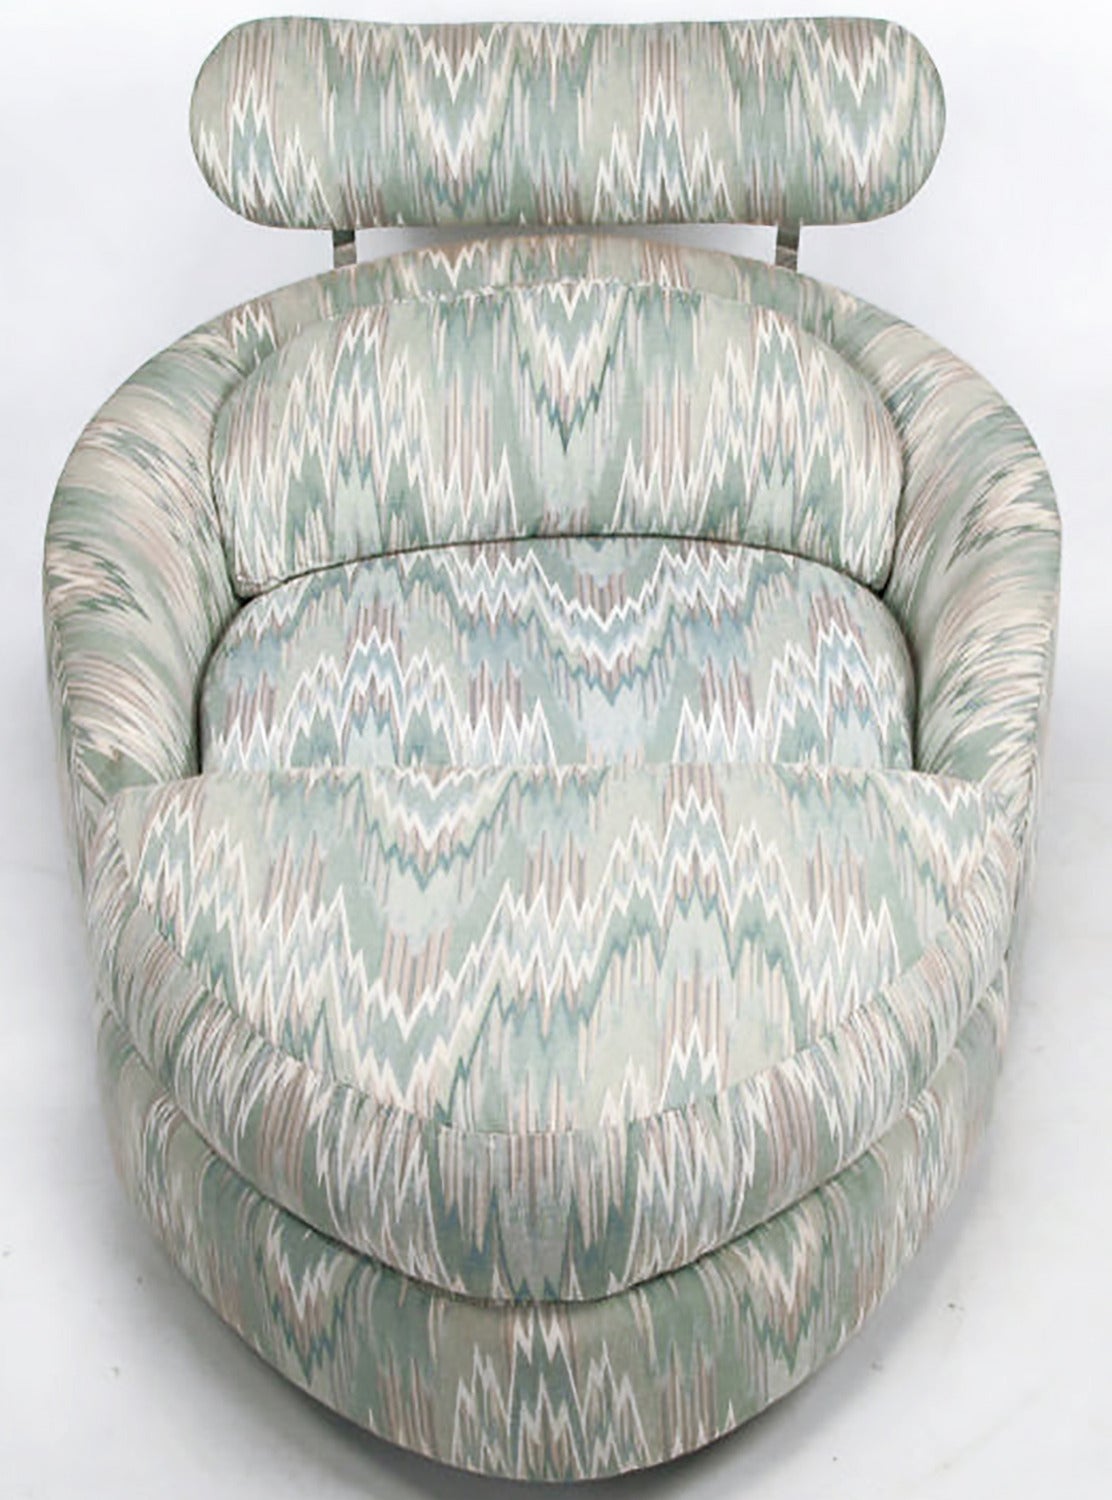 Inspirierendes Design und Funktionalität von Adrian Pearsall für Craft Associates. Dieser drehbare Barrel Chair hat eine niedrige Sitzhöhe und eine geschwungene Kopfstütze. Zusammen mit der dreieckigen Ottomane hat sie das Aussehen einer